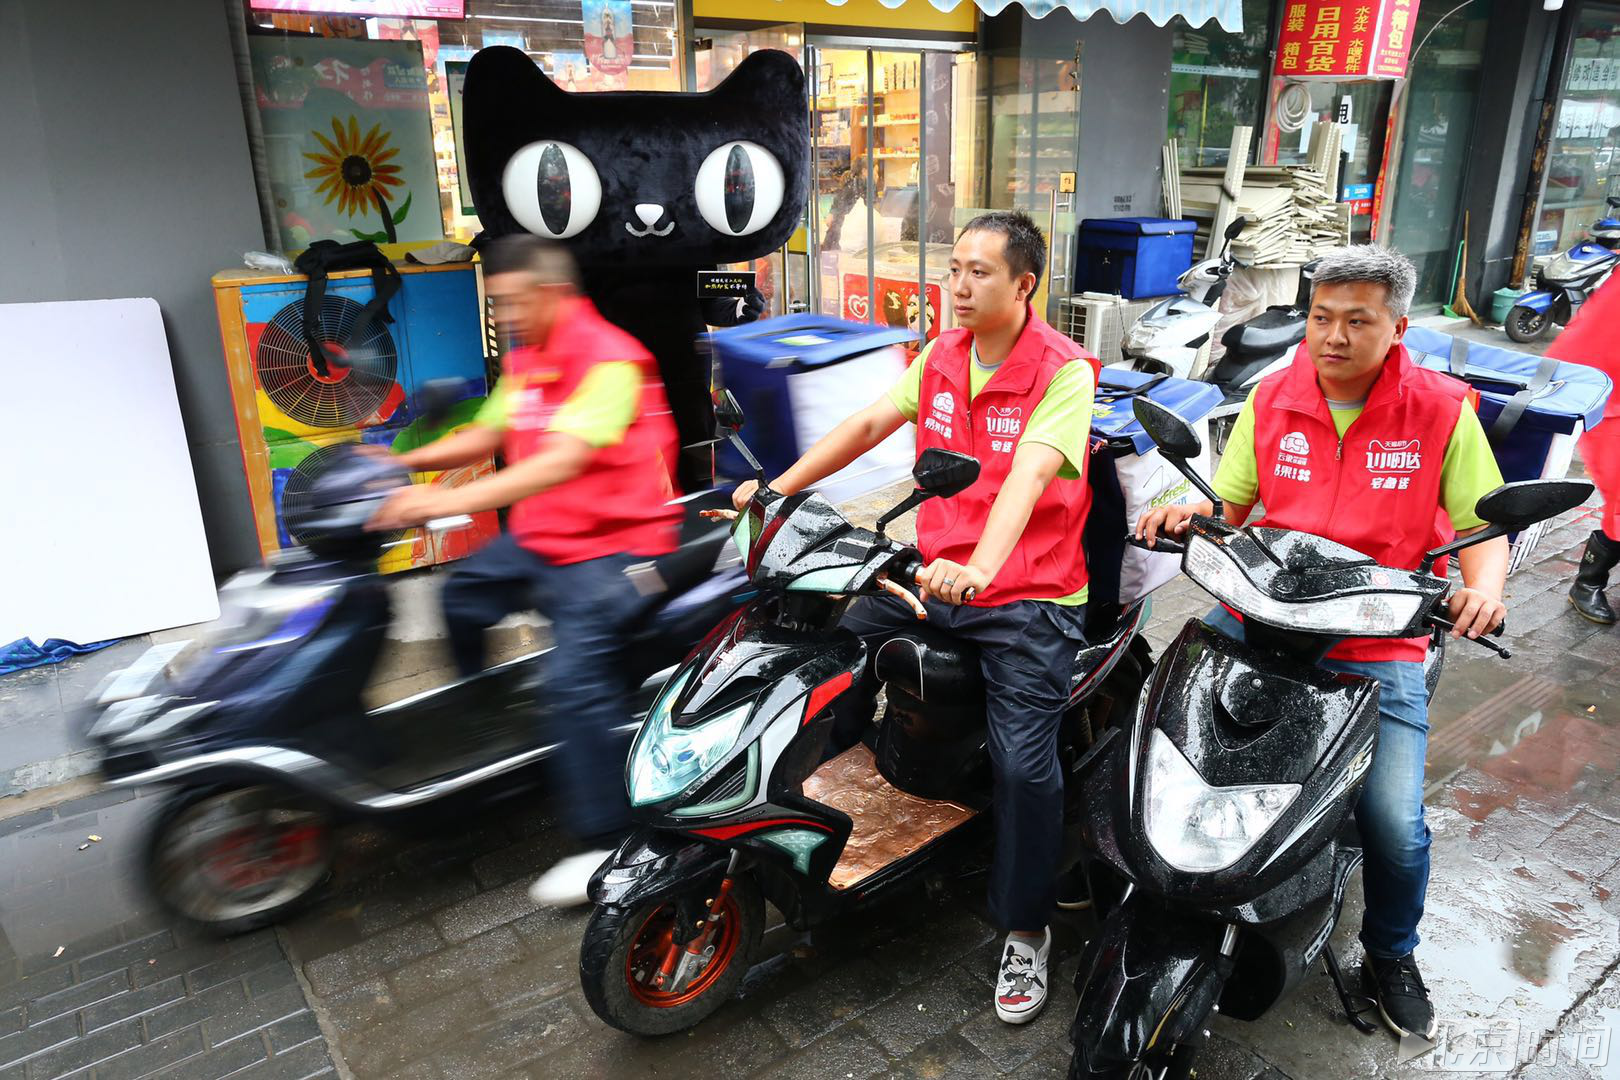 北京暴雨天猫超市订单猛增一倍 数千快递小哥